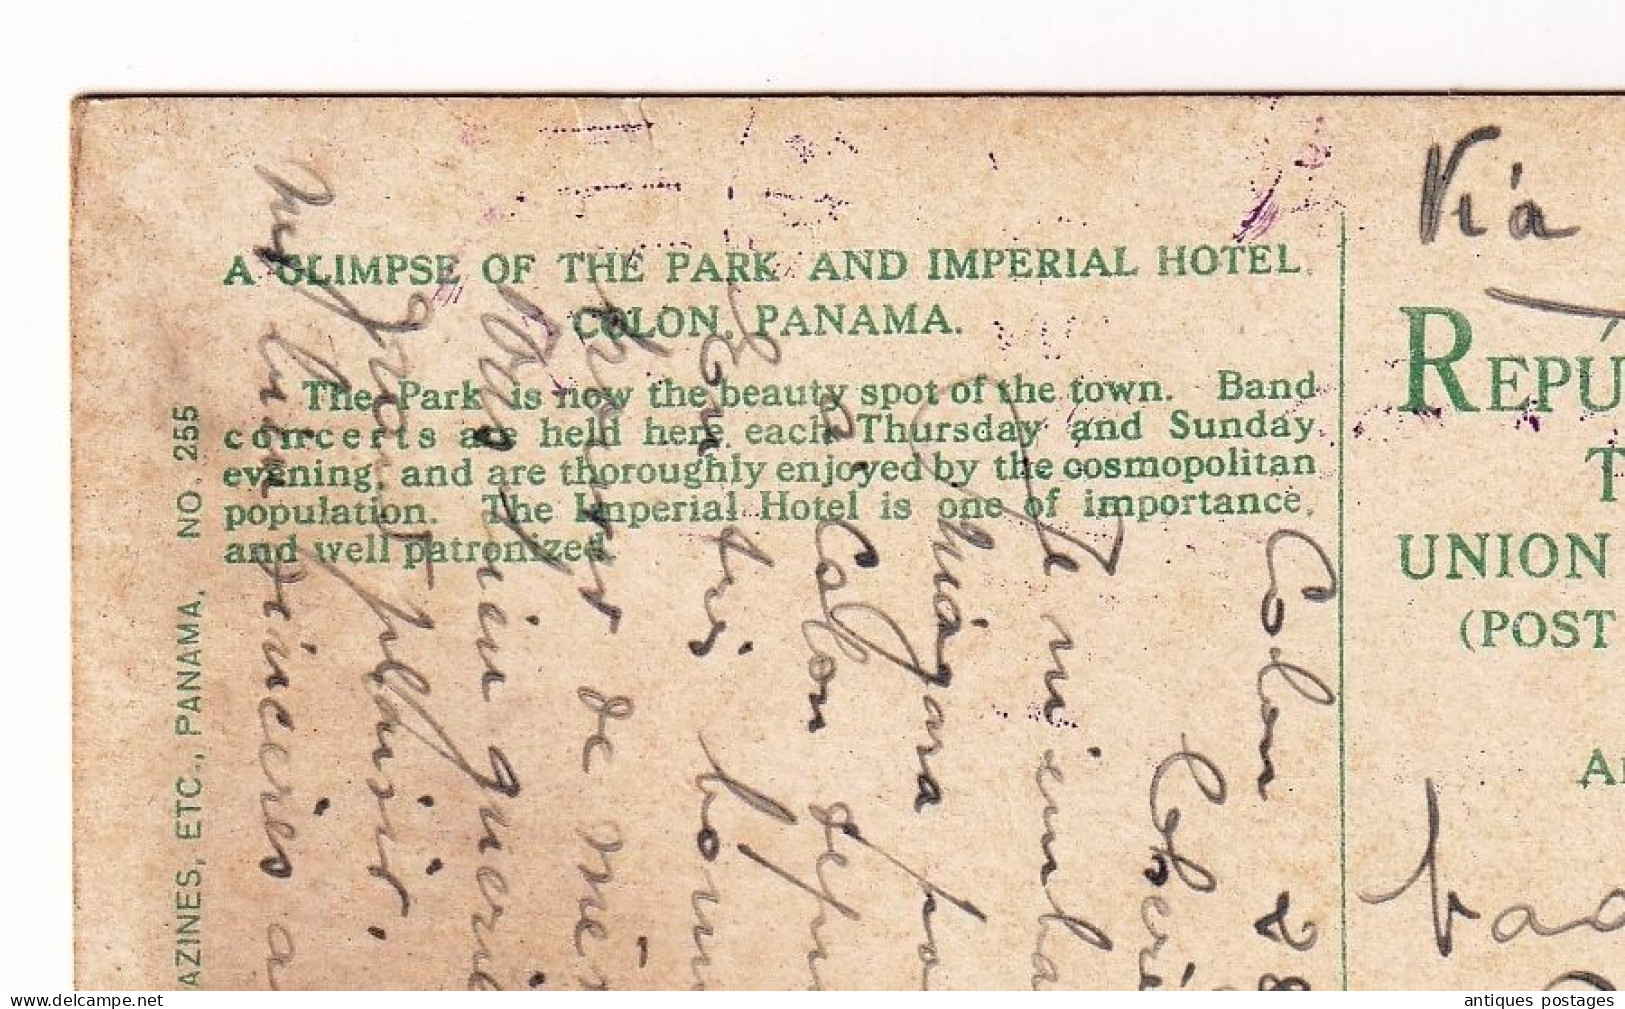 Republica de Panama Colón 1917 Imperial Hotel Glimpse of the Park Paris Via New York Saulnier Laprade